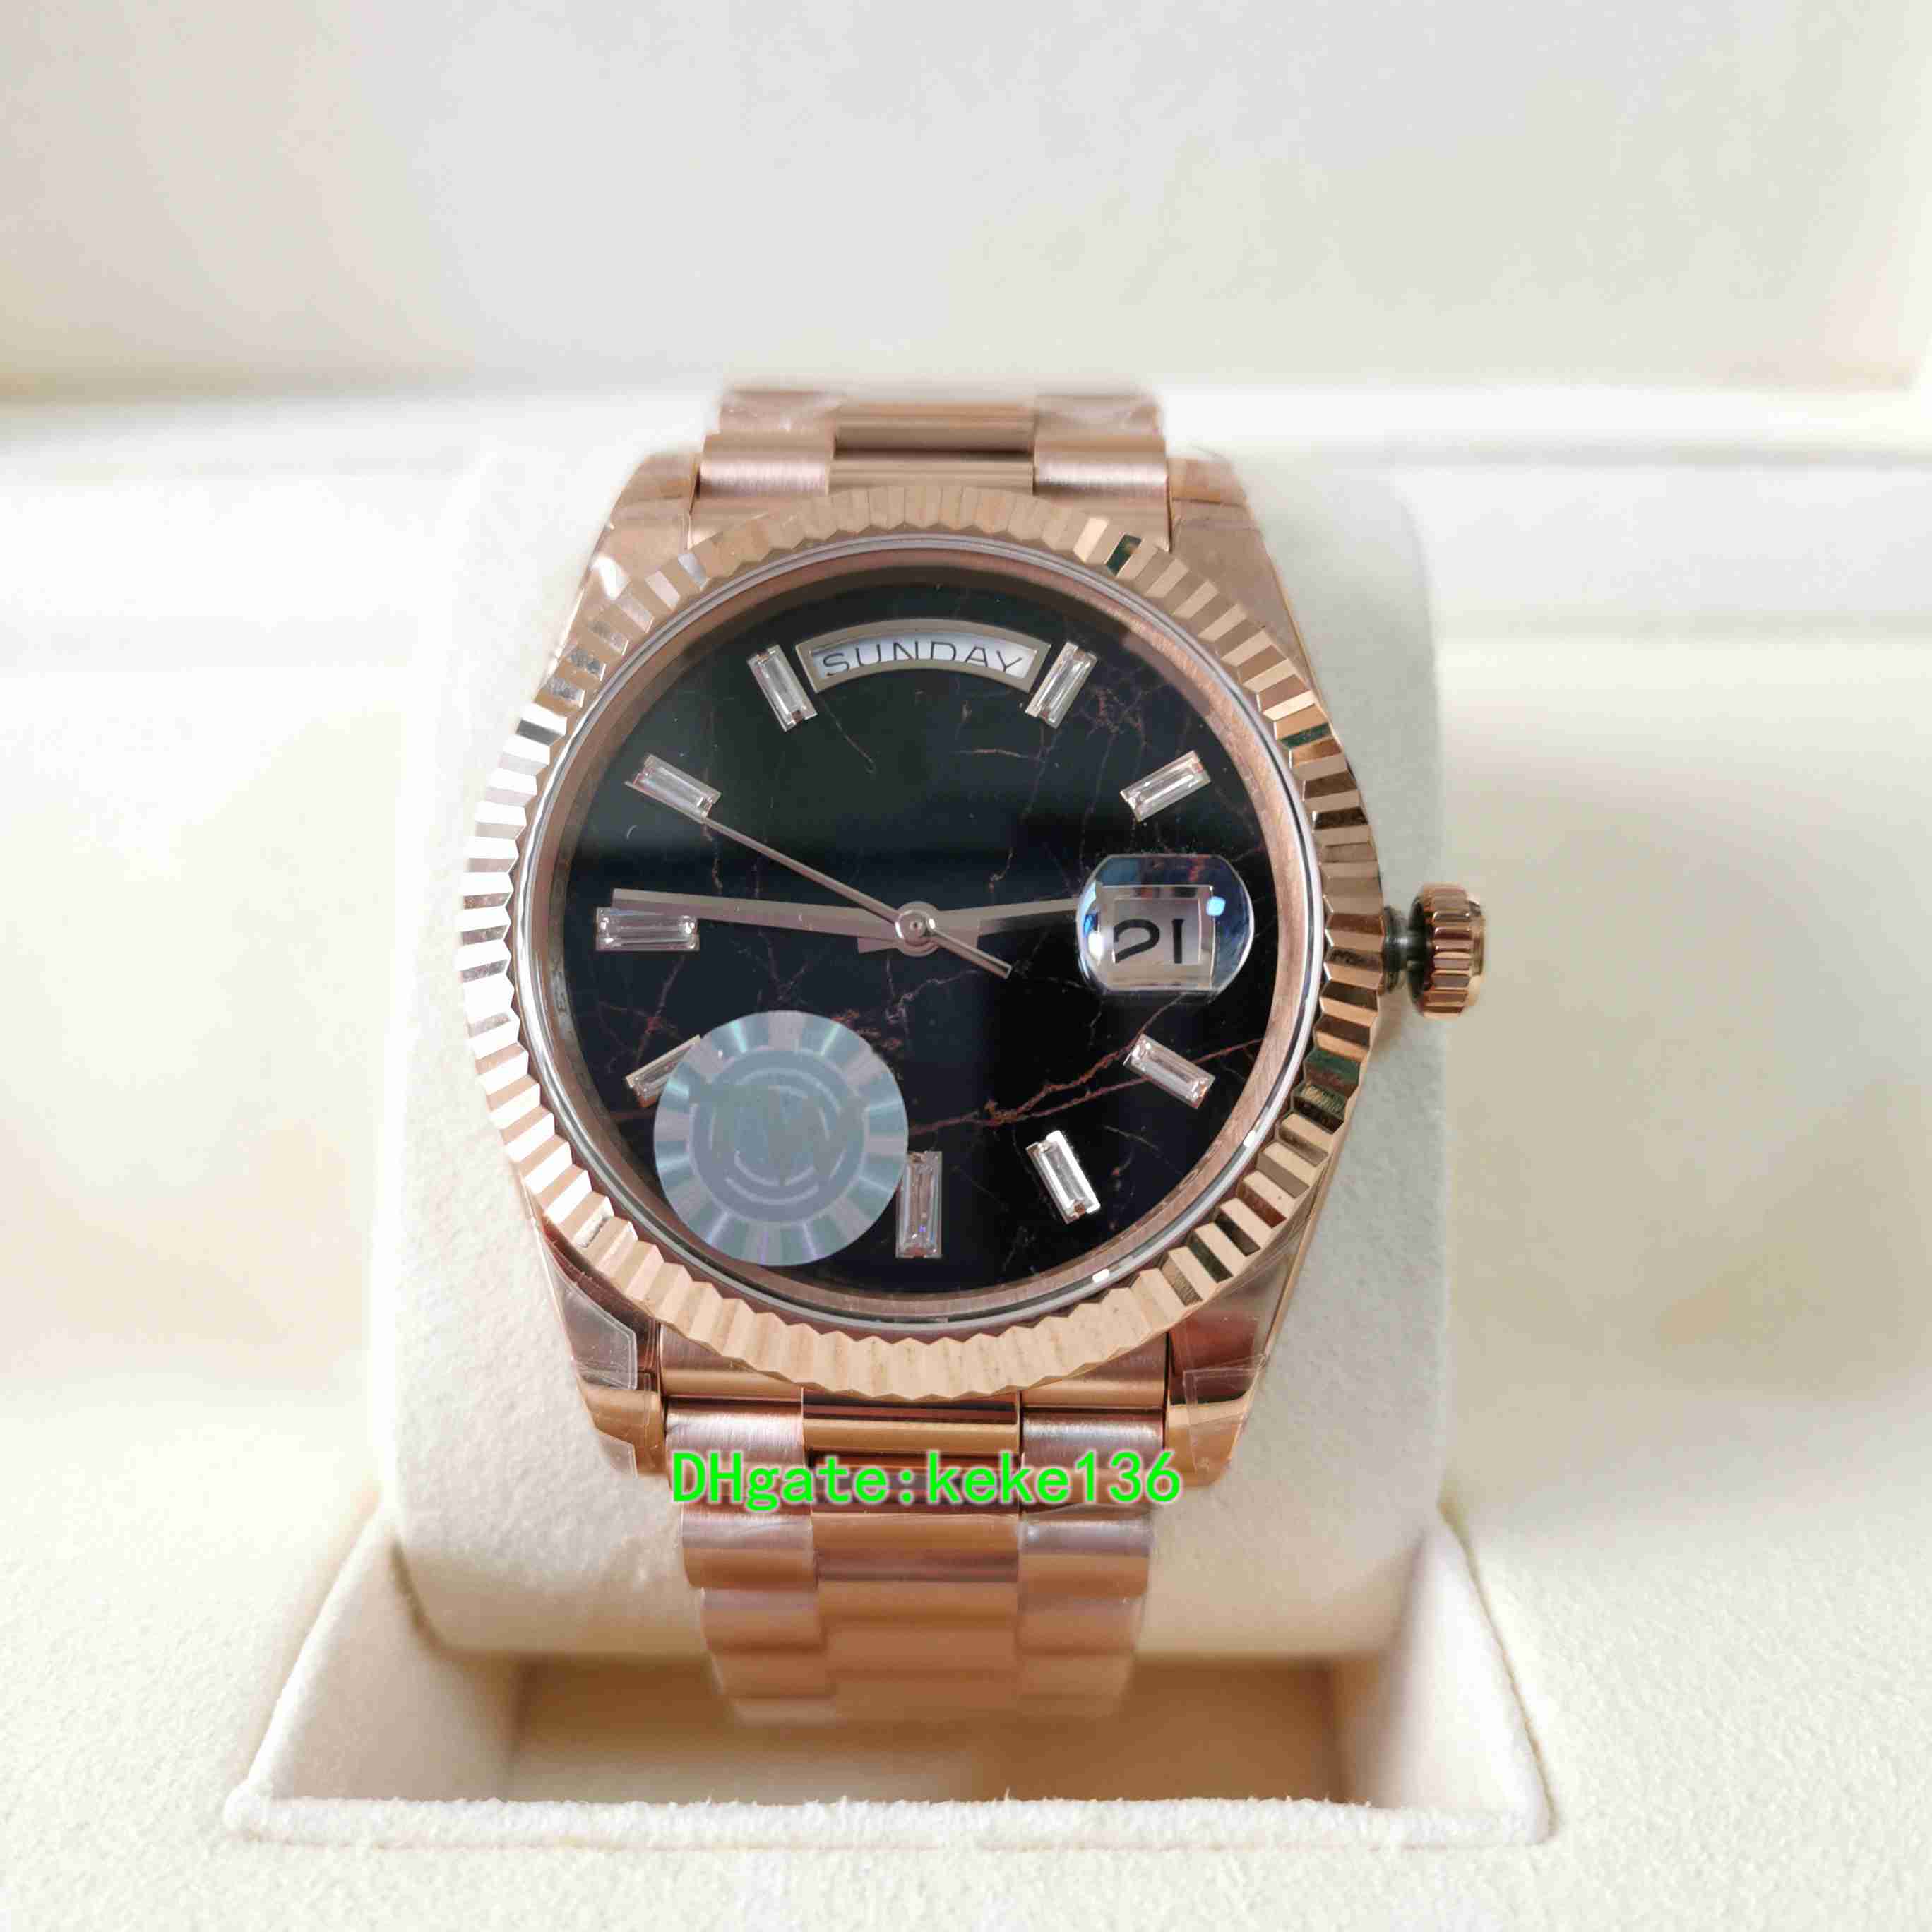 TWF Qualité parfaite m228235-0045 228235 40mm montres pour hommes or rose diamant inoxydable saphir 2836 mouvement automatique mécanique 324A